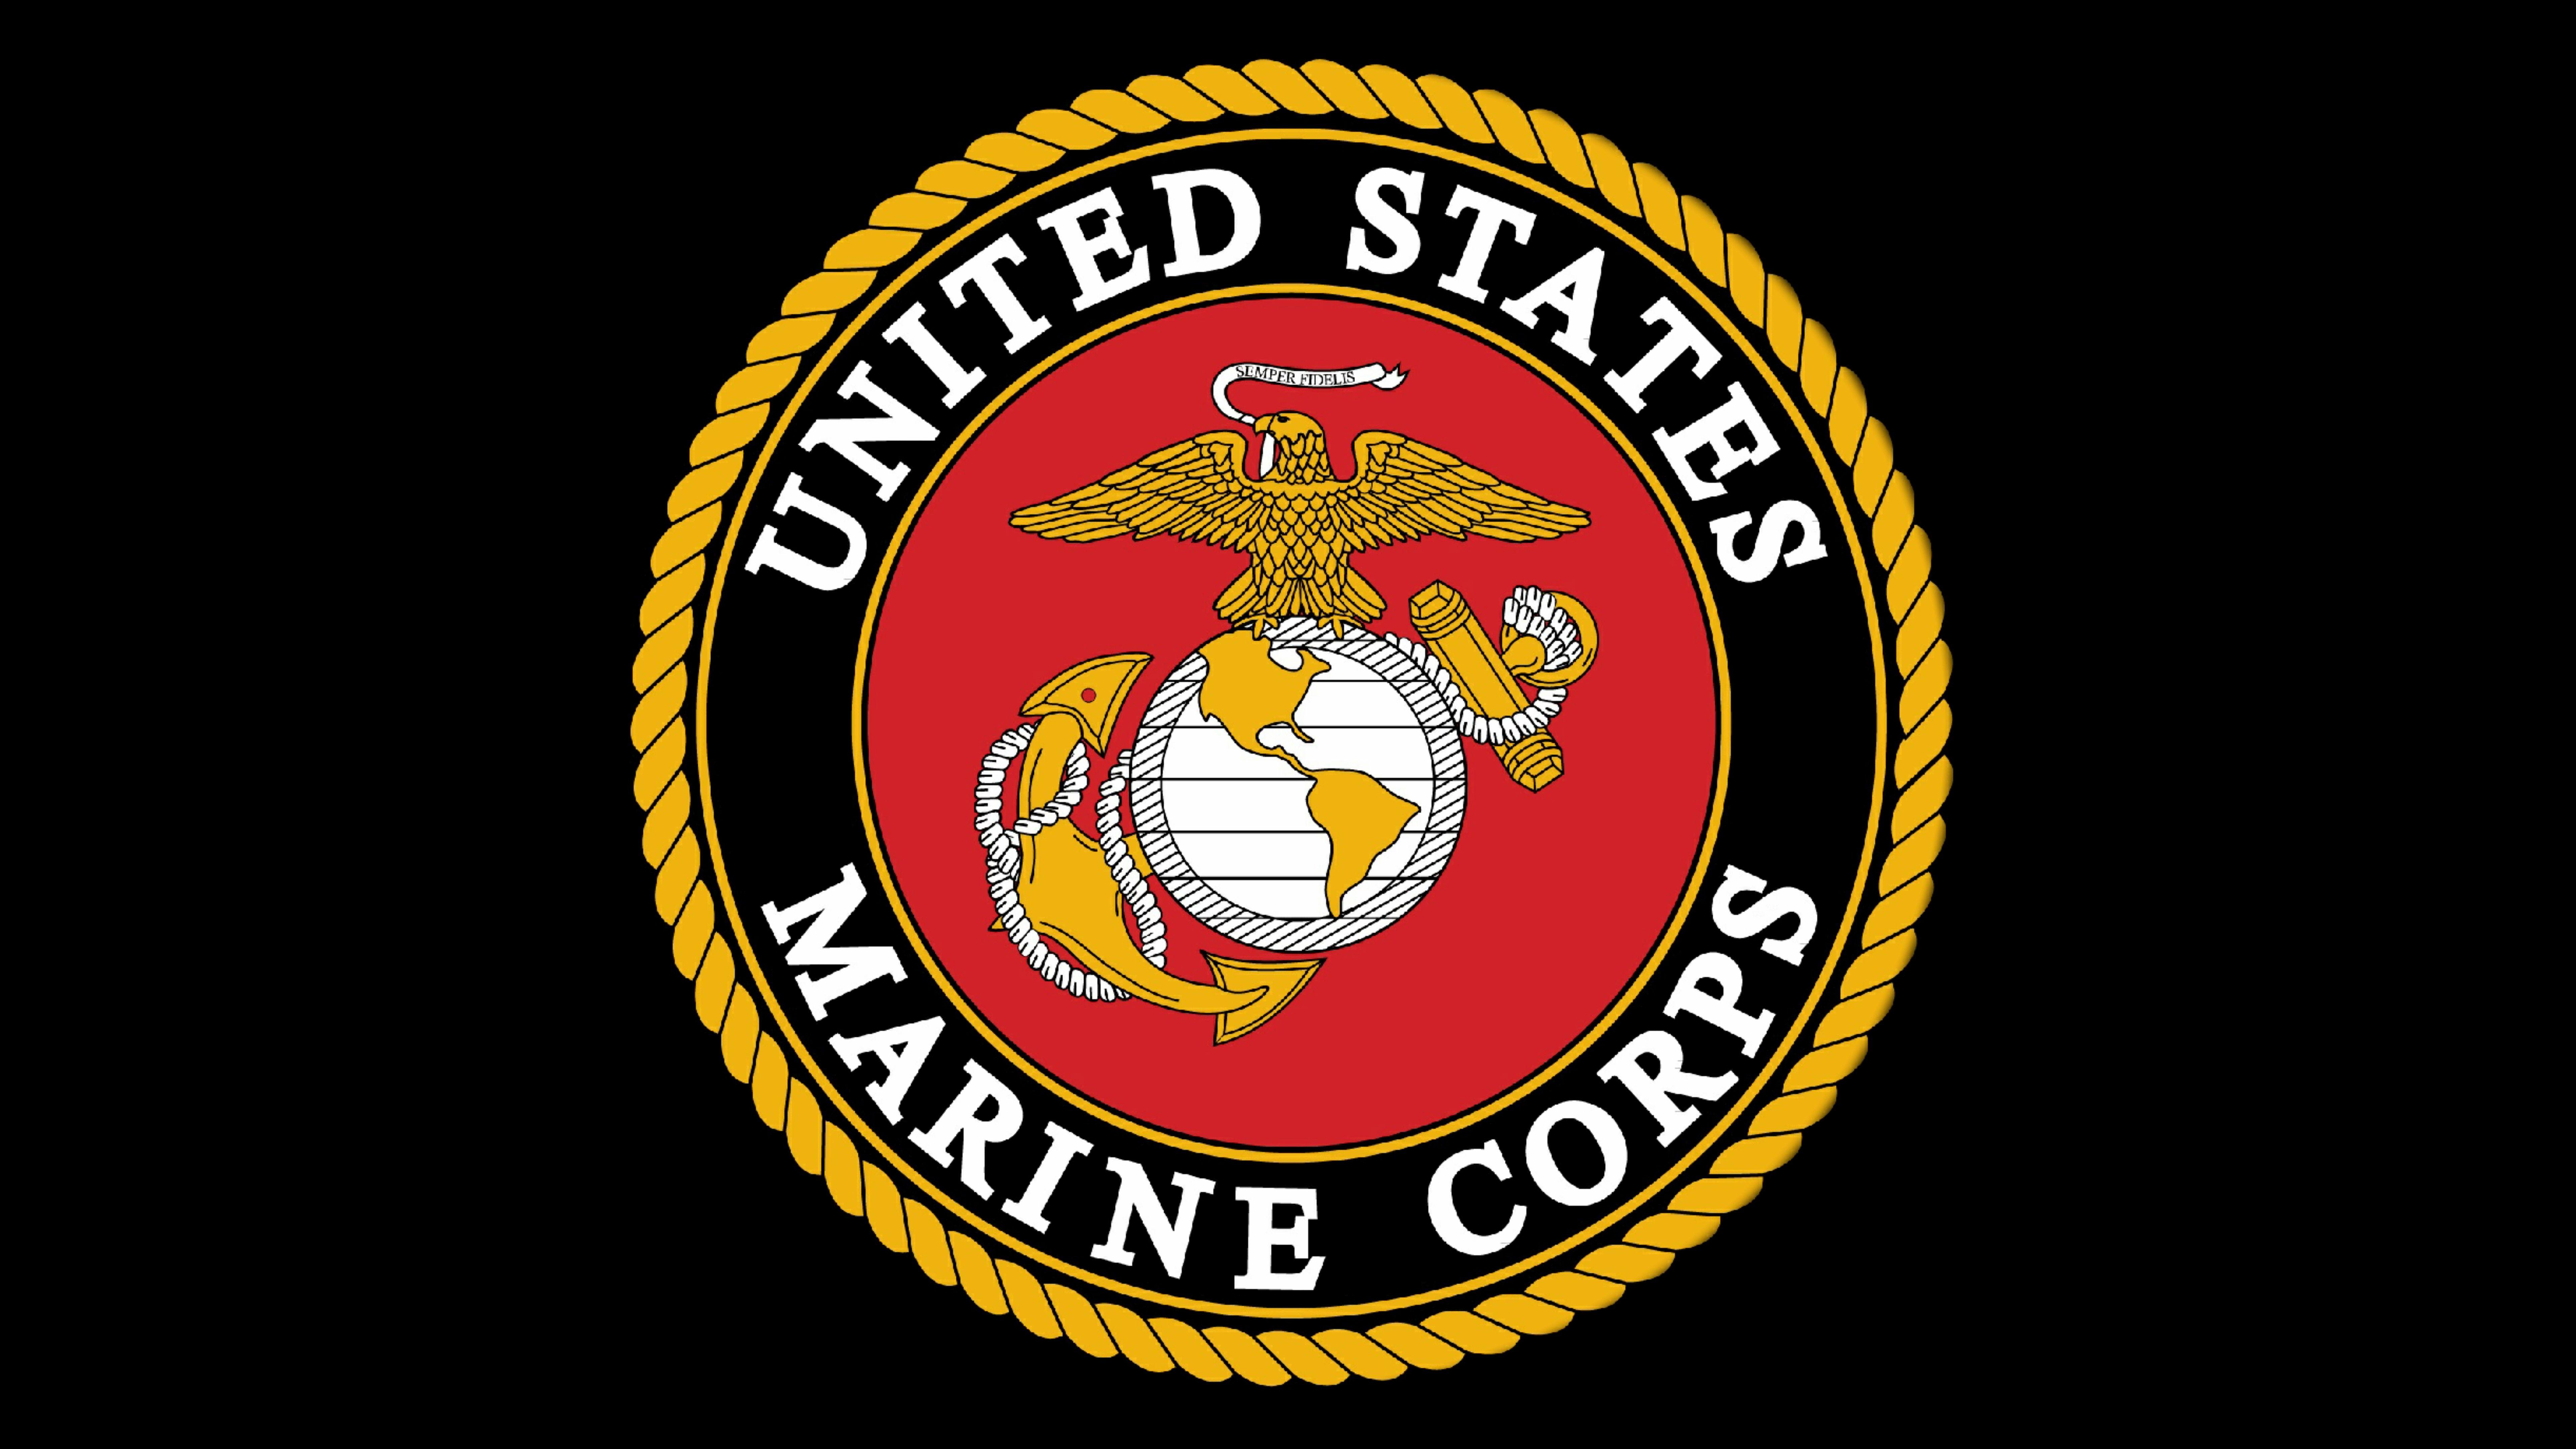 United States Marines Logo - Wallpaper United States Marine Corps, Emblem, Logo, 4K, 8K, Military ...